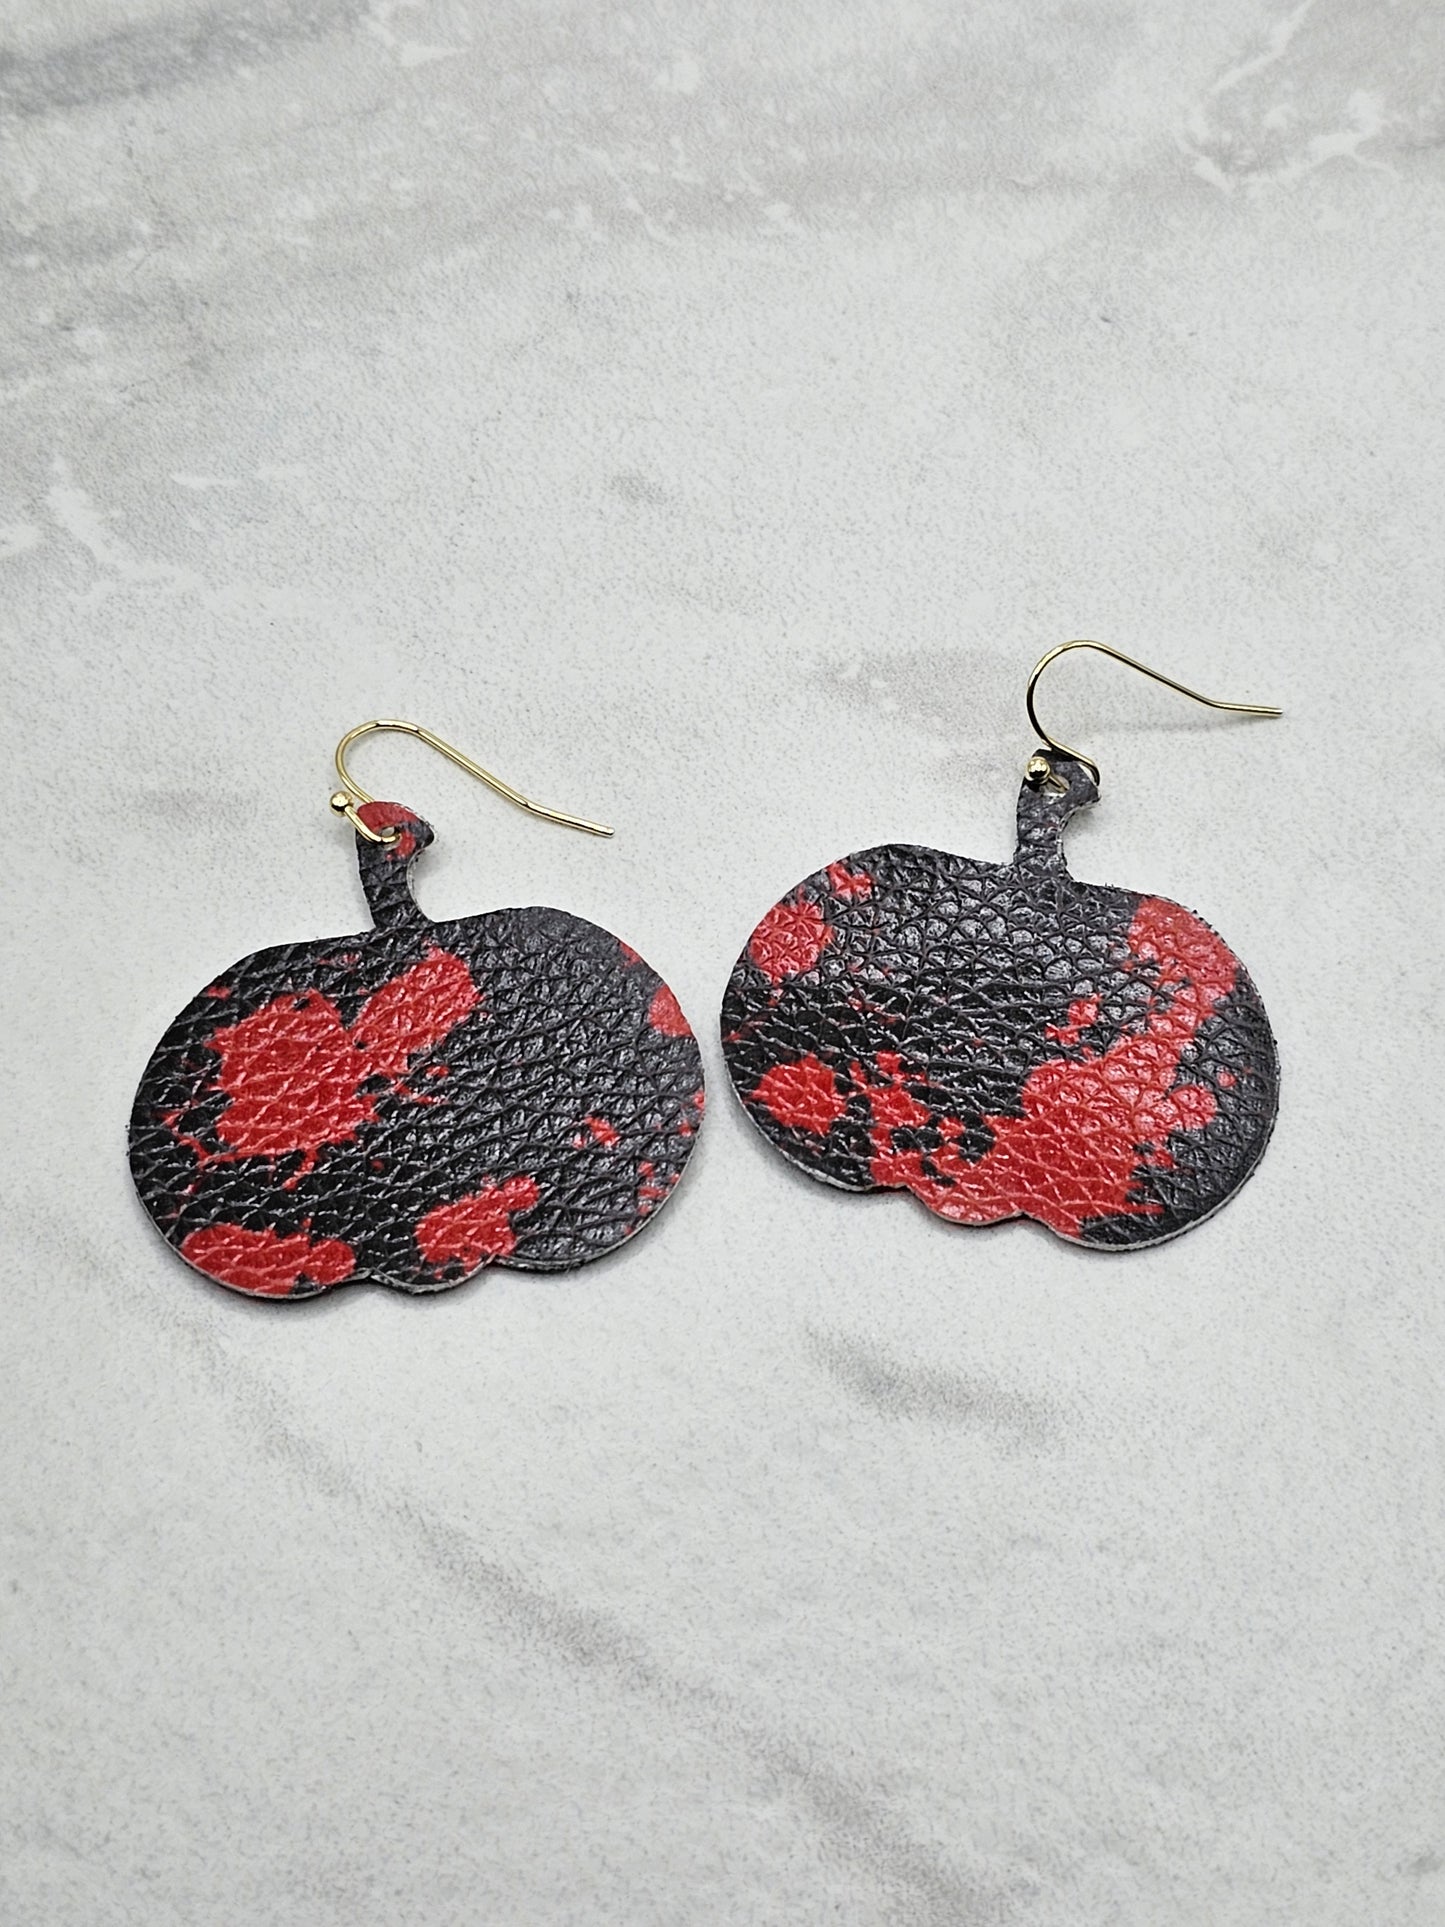 Black and Red Pumpkin Earrings - Faux Leather Halloween Earrings for Women